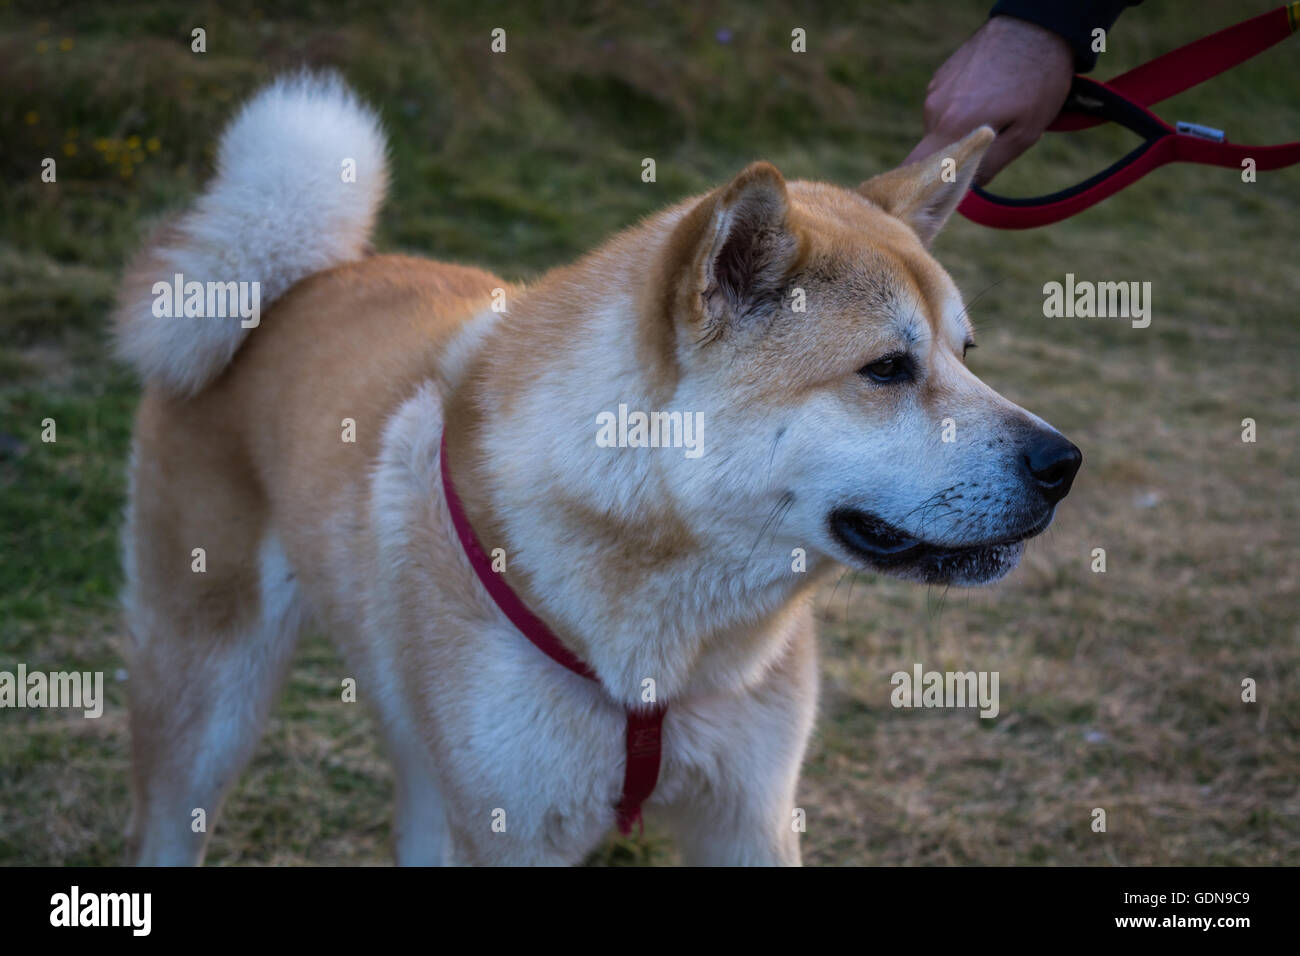 Japanische Akita Inu Welpen, weiße und rote Hund Nahaufnahme  Stockfotografie - Alamy